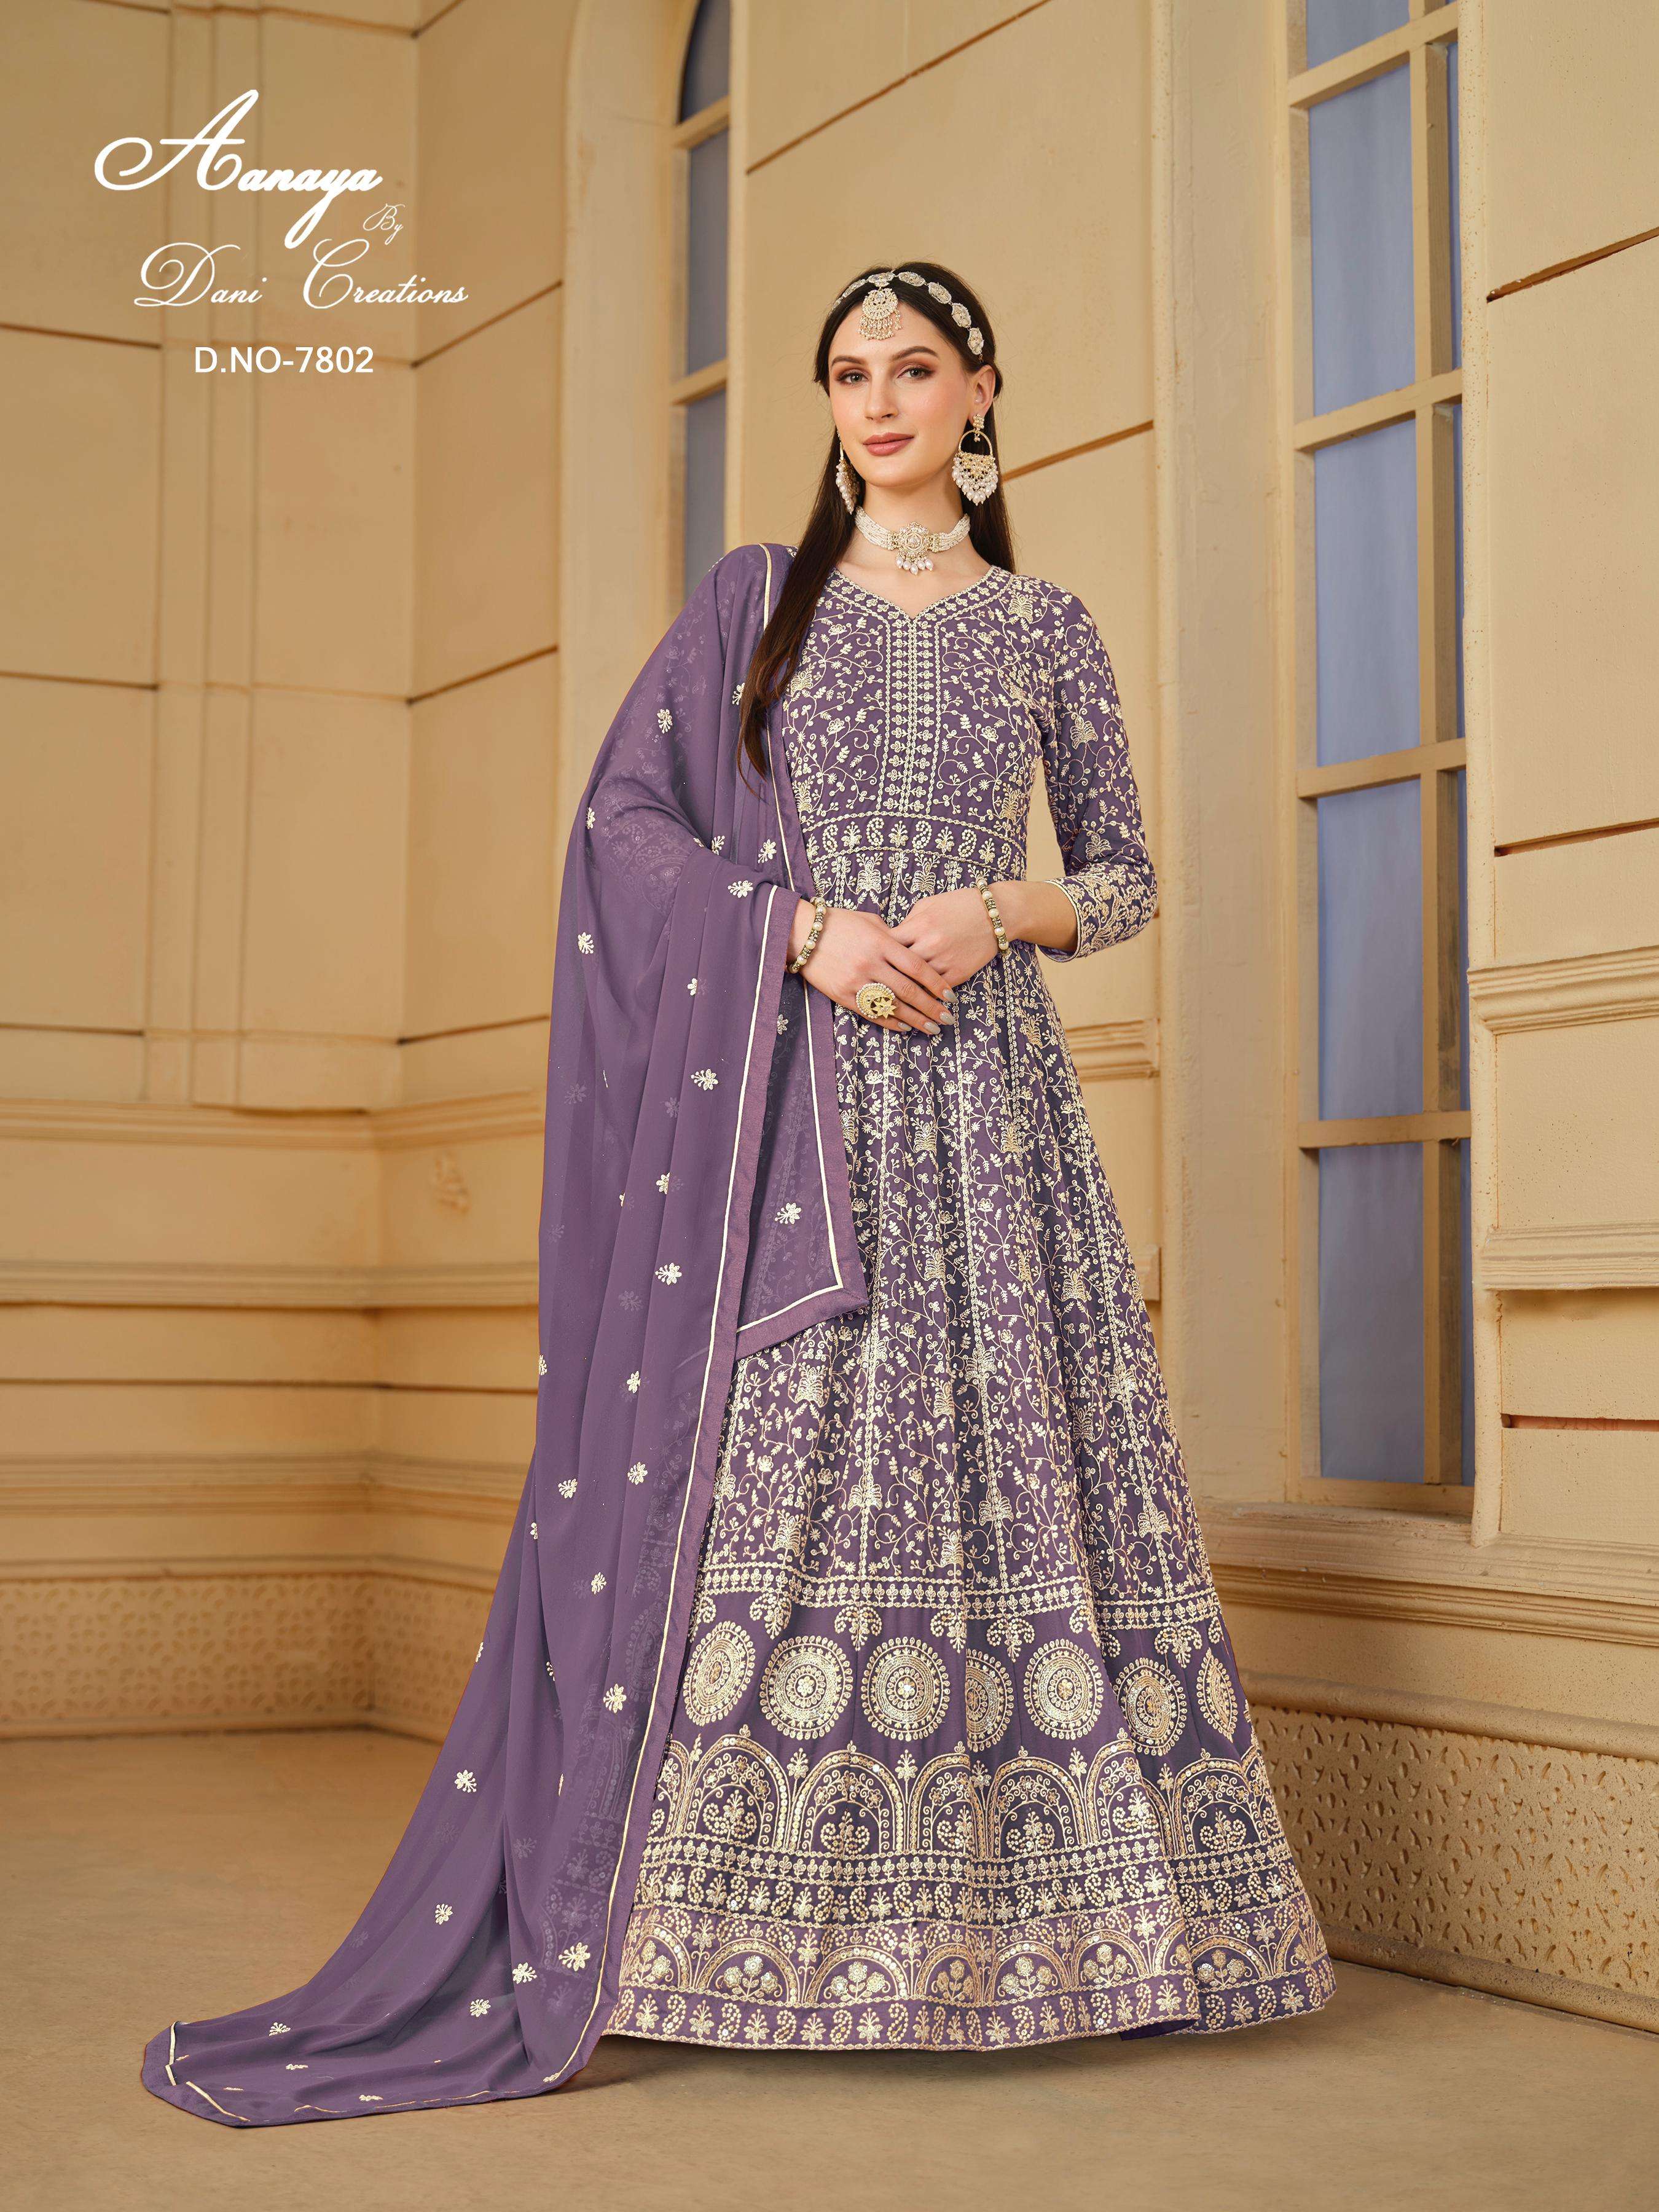 dani aanaya 7800 series vol 178 georgette regal look salwar suit catalog